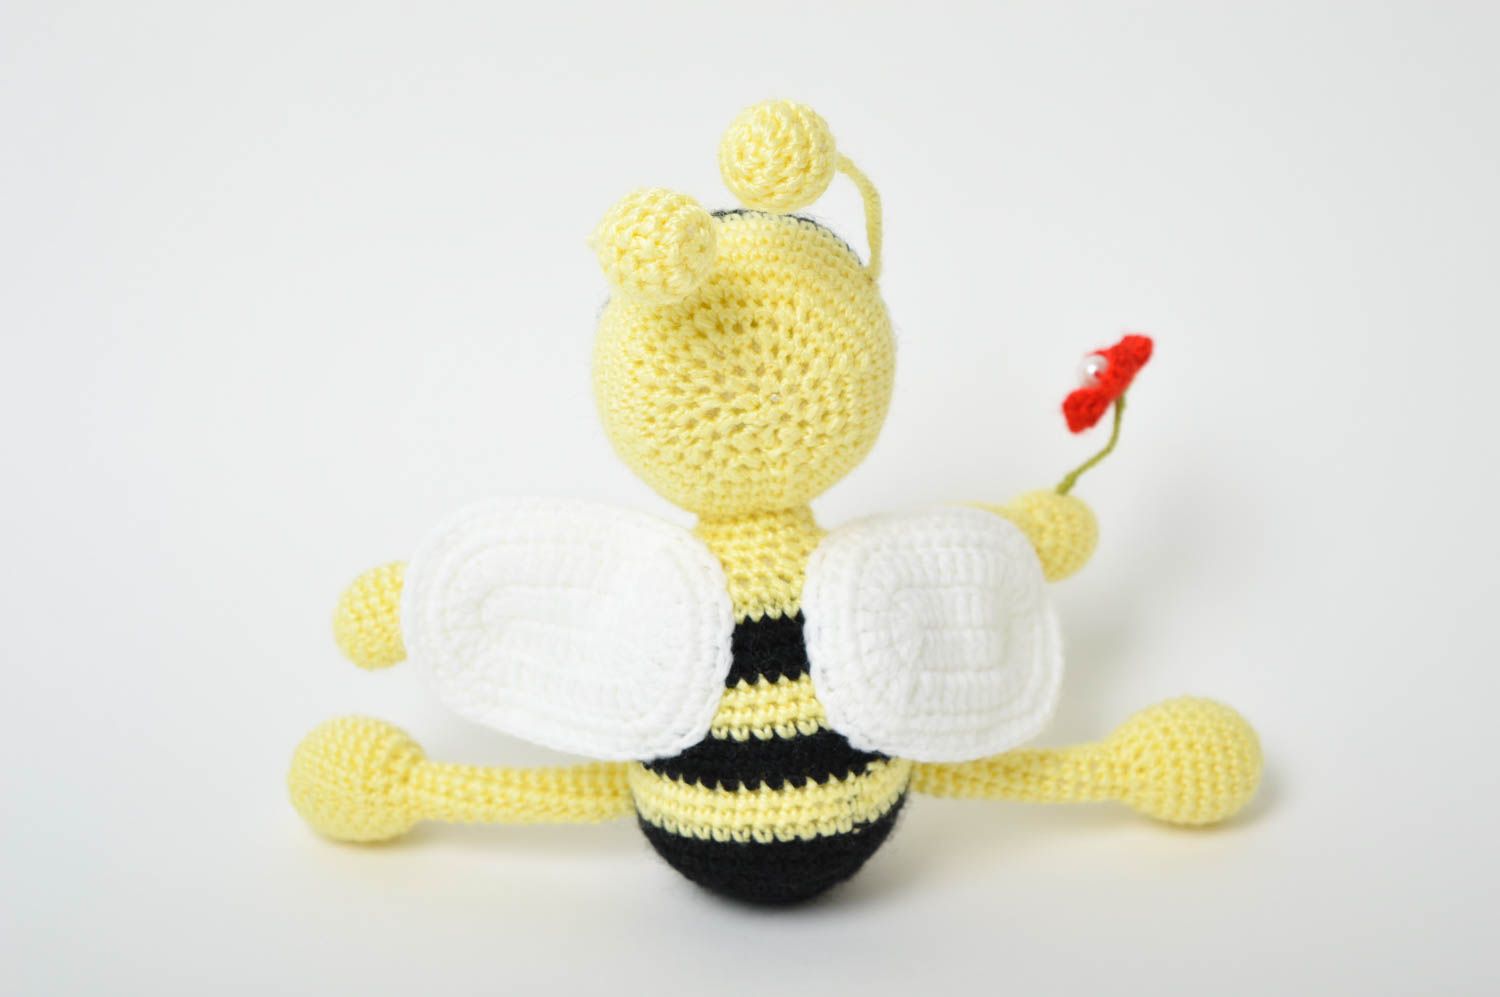 Мягкая игрушка ручной работы игрушка пчелка крючком игрушка авторская кукла фото 3